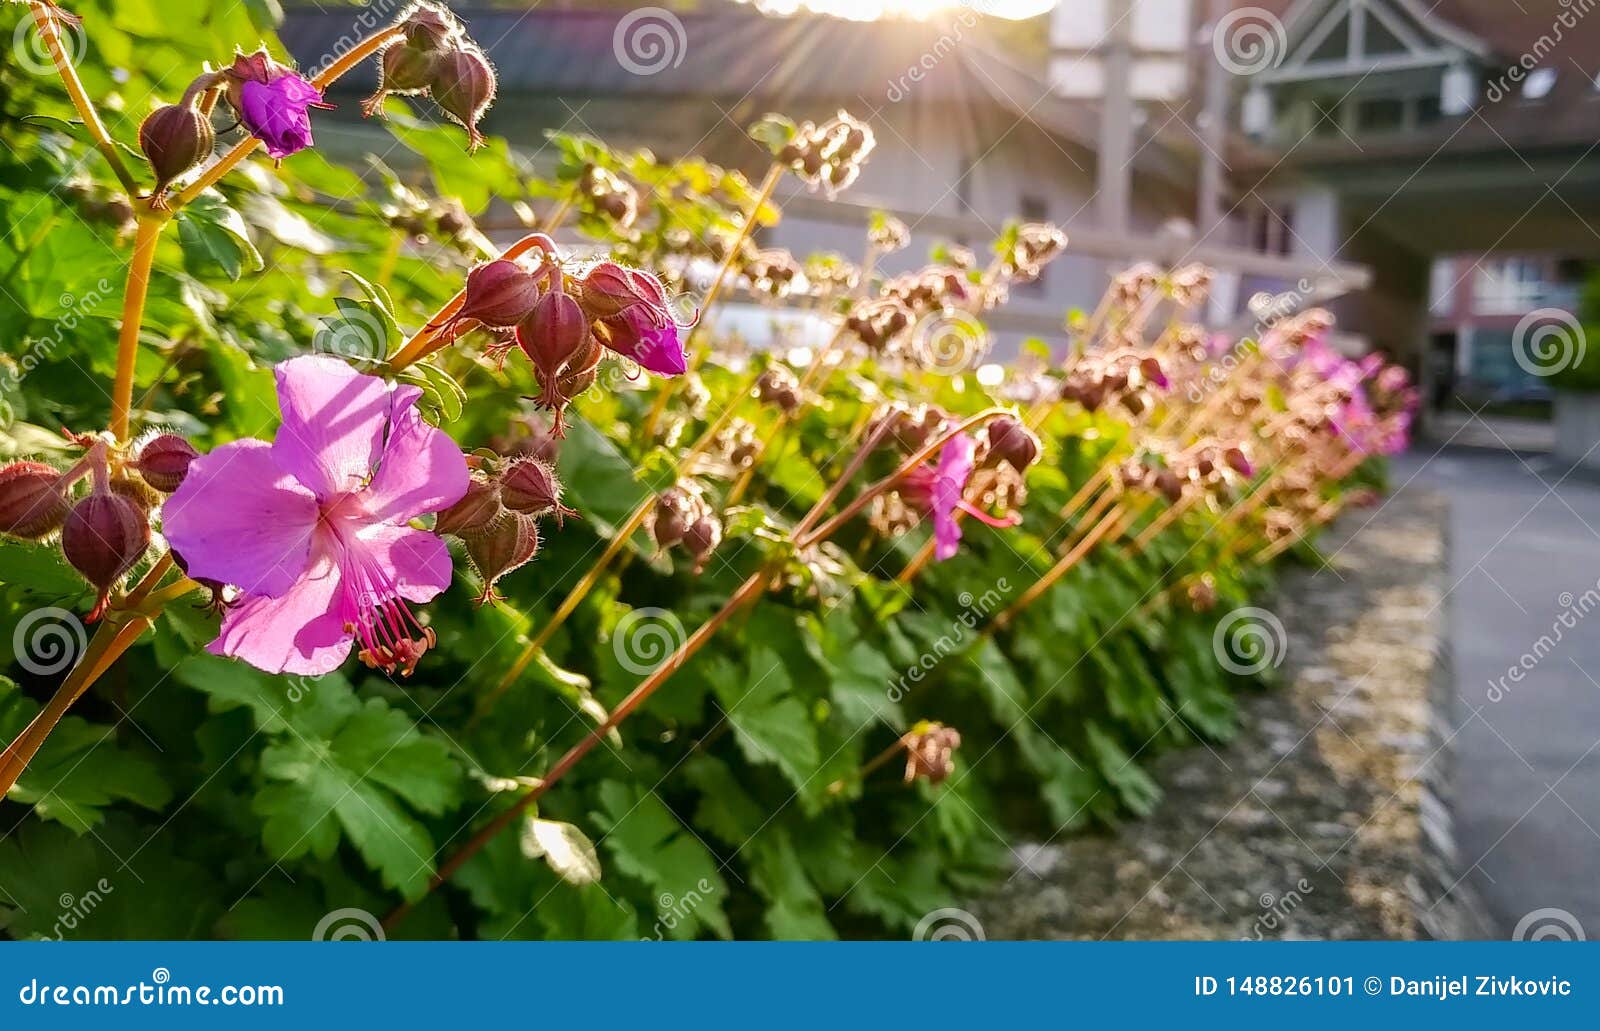 little,pink flowers